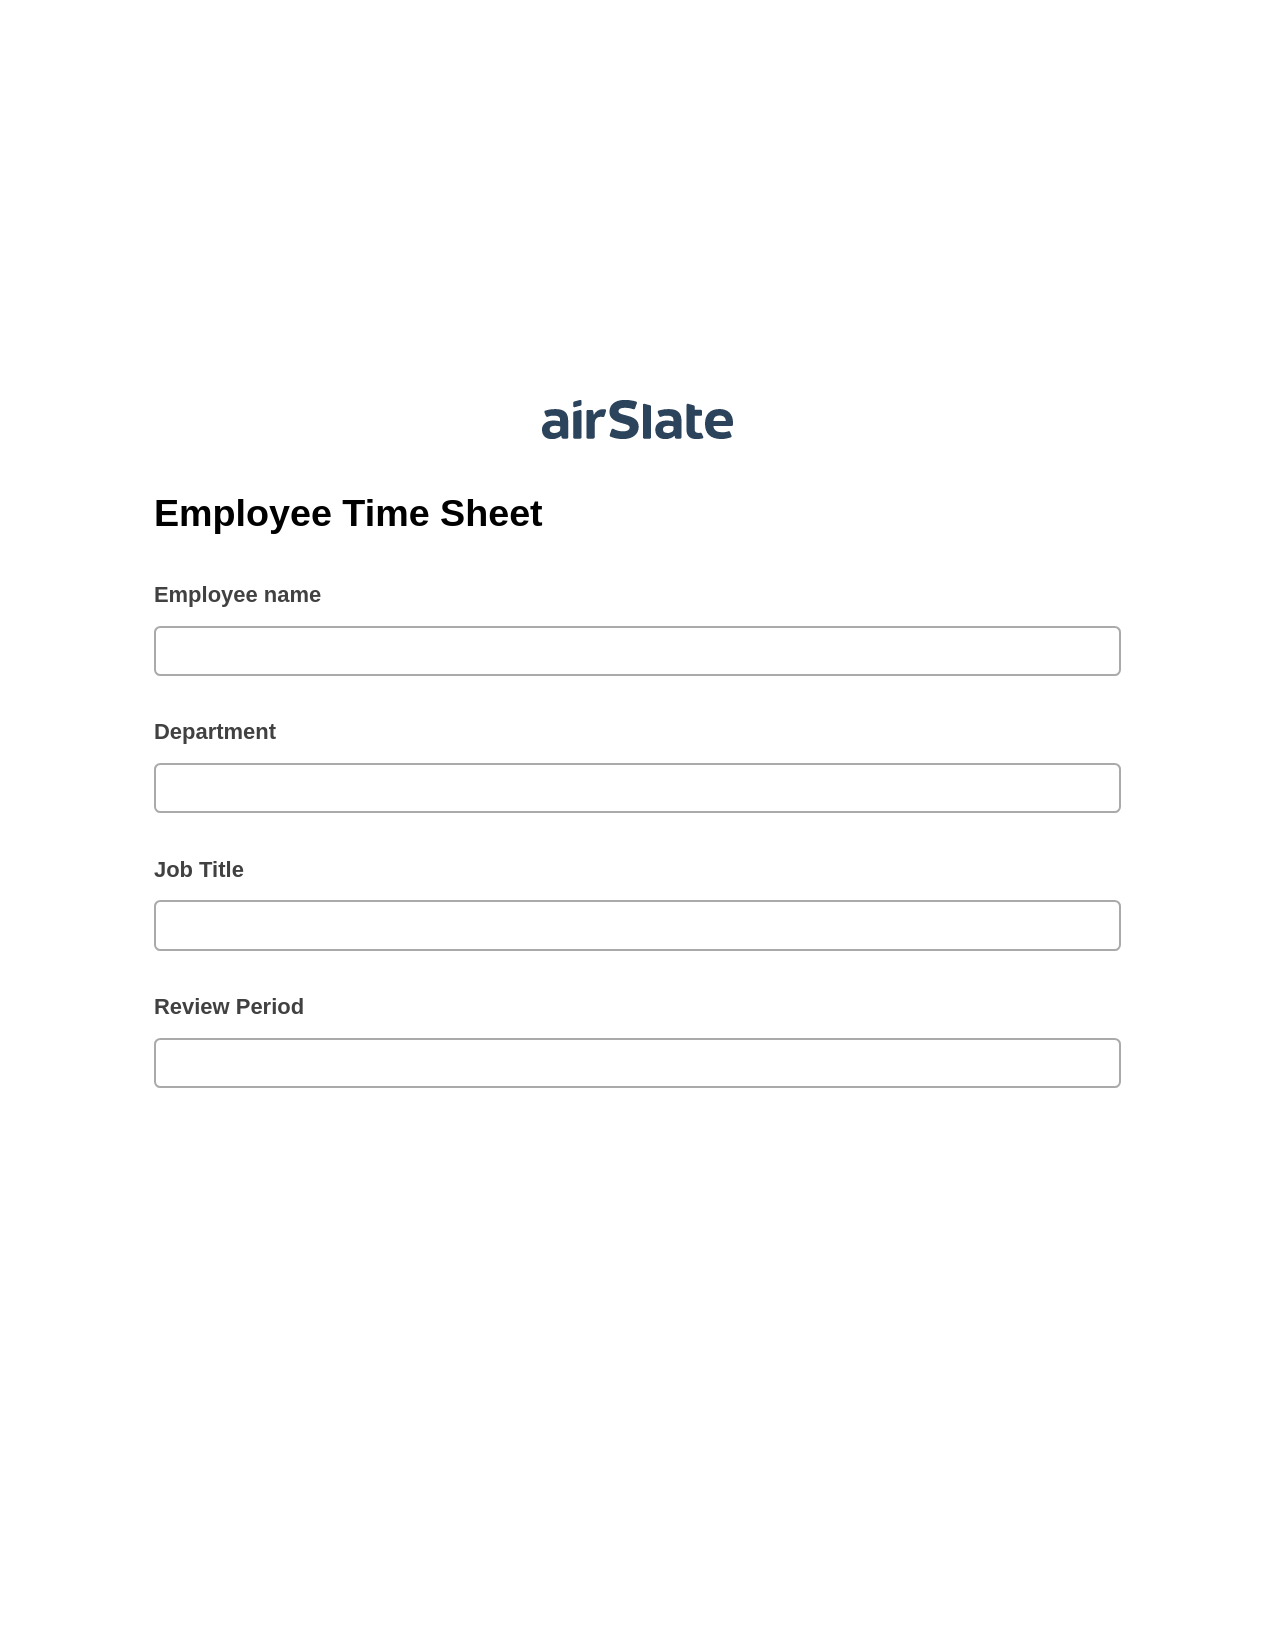 Multirole Employee Time Sheet Pre-fill from Smartsheet Bot, Reminder Bot, Webhook Postfinish Bot